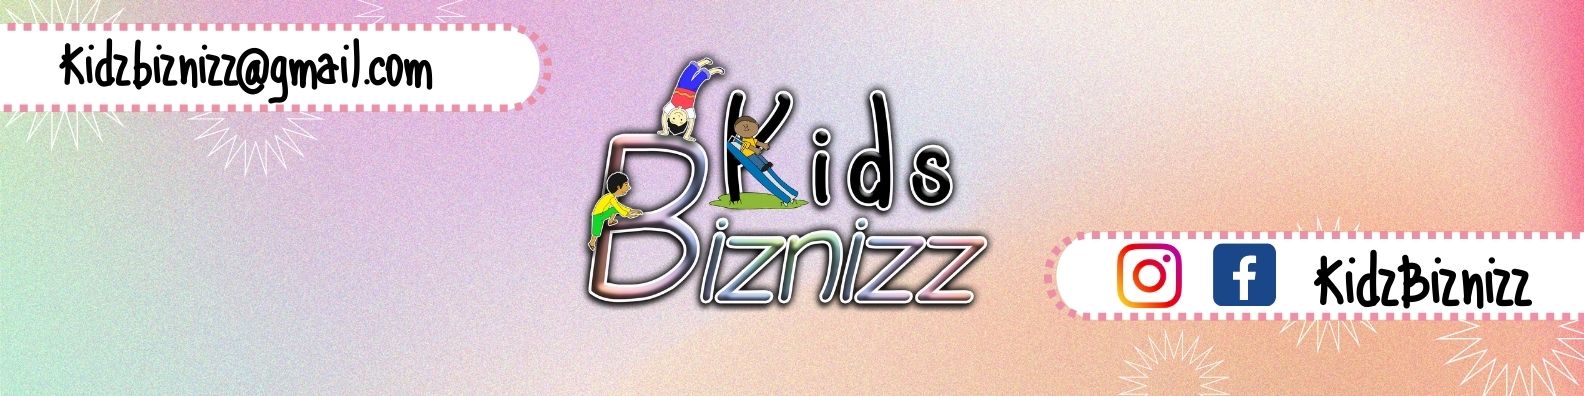 KidzBiznizz's main image